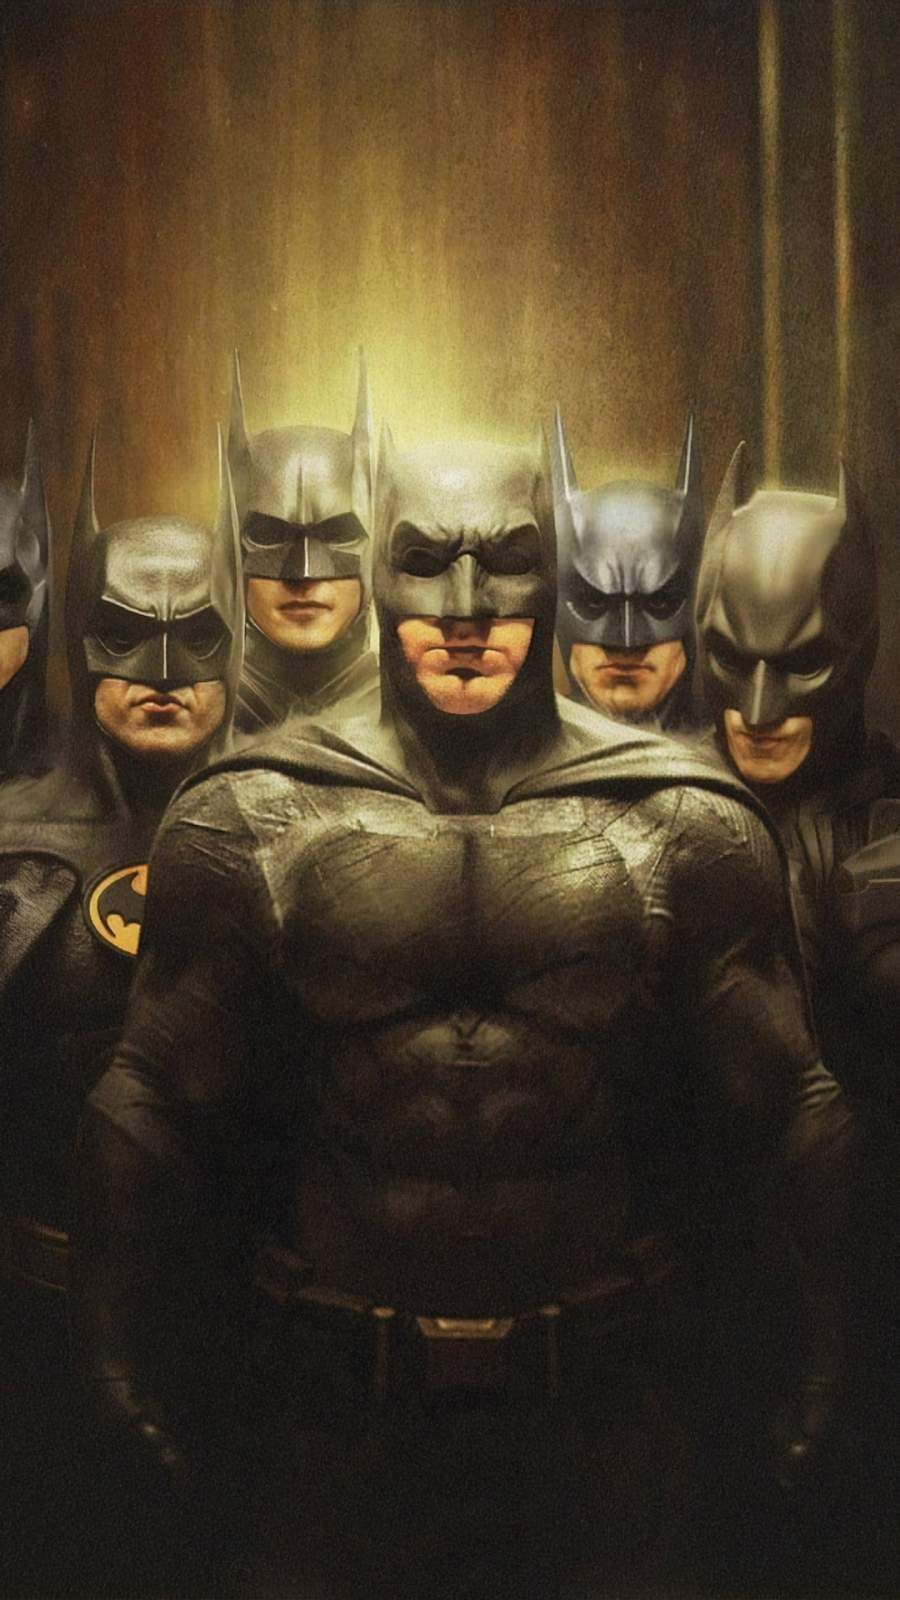 Batman Squad iPhone Wallpaper. Superhero wallpaper, Batman art, Batman dark